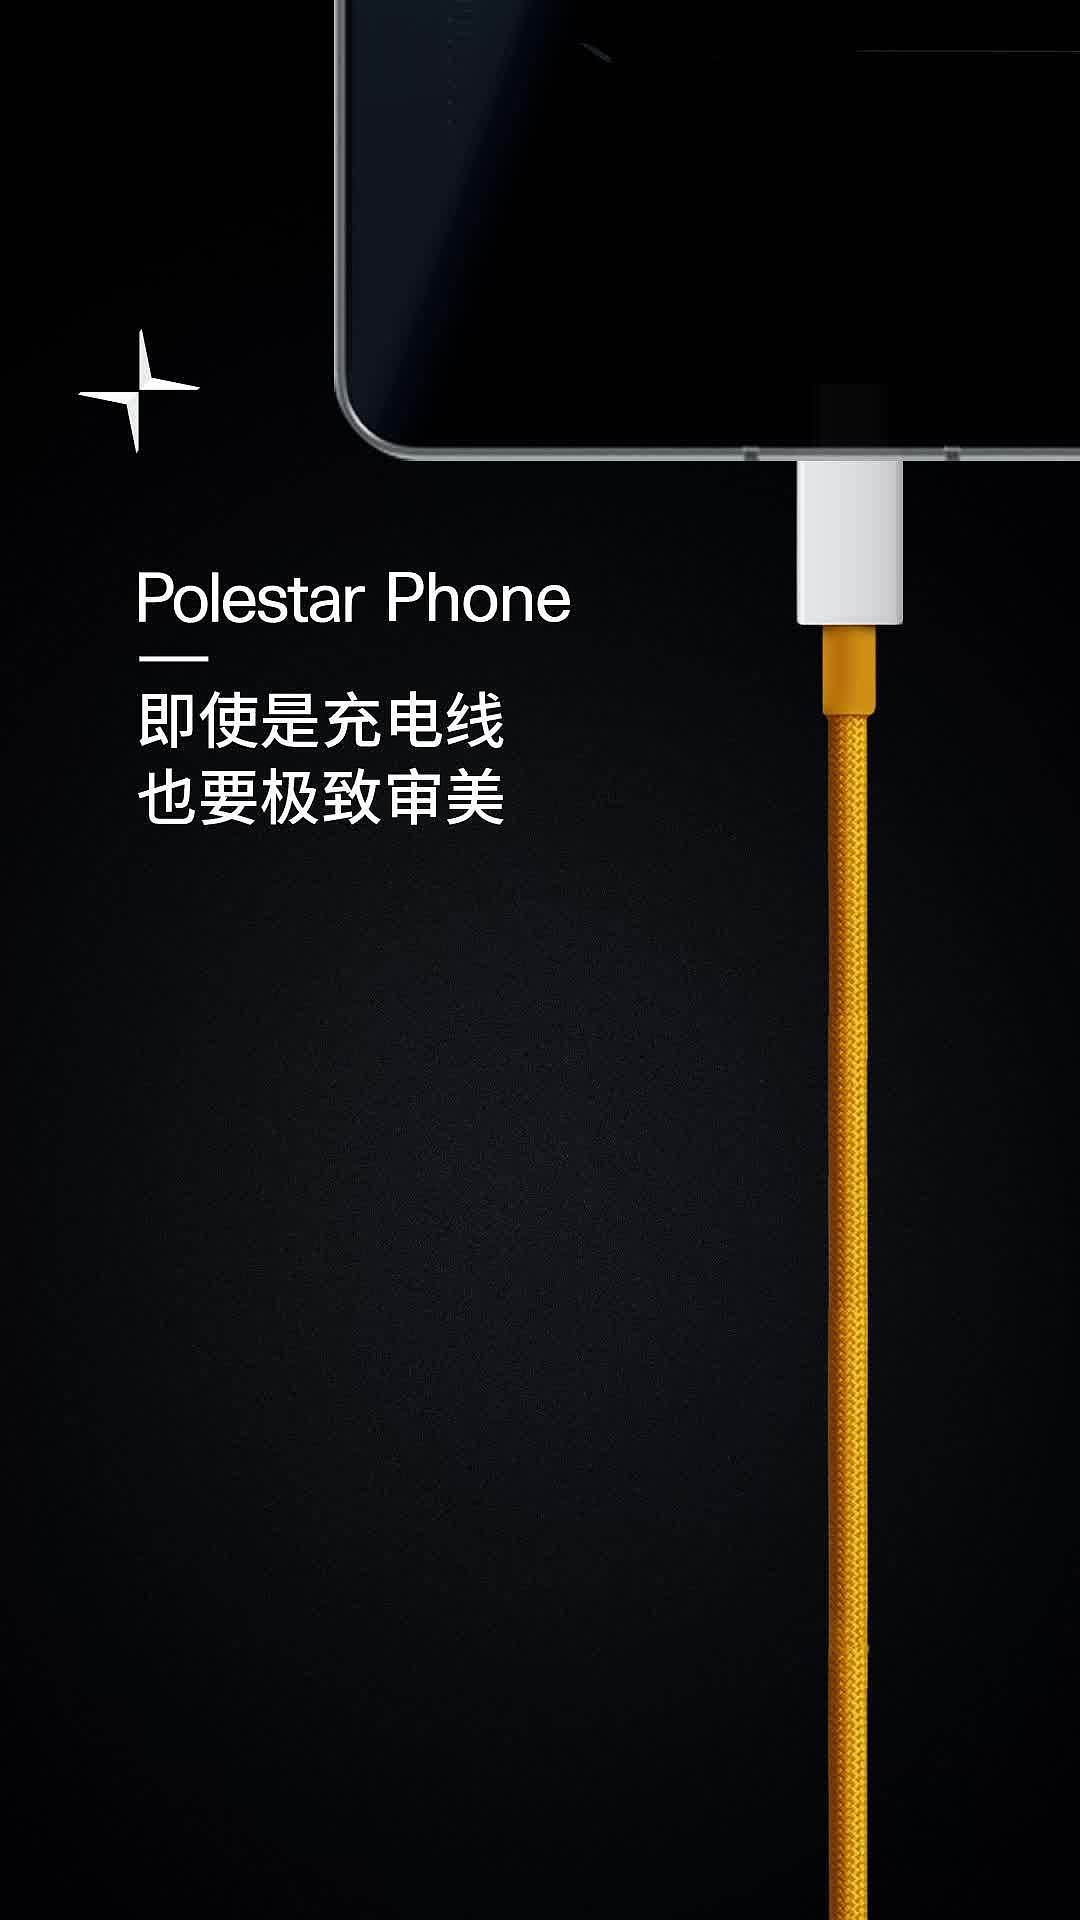 极星手机 Polestar Phone 预热，4 月 16 日揭晓“新体验” - 2